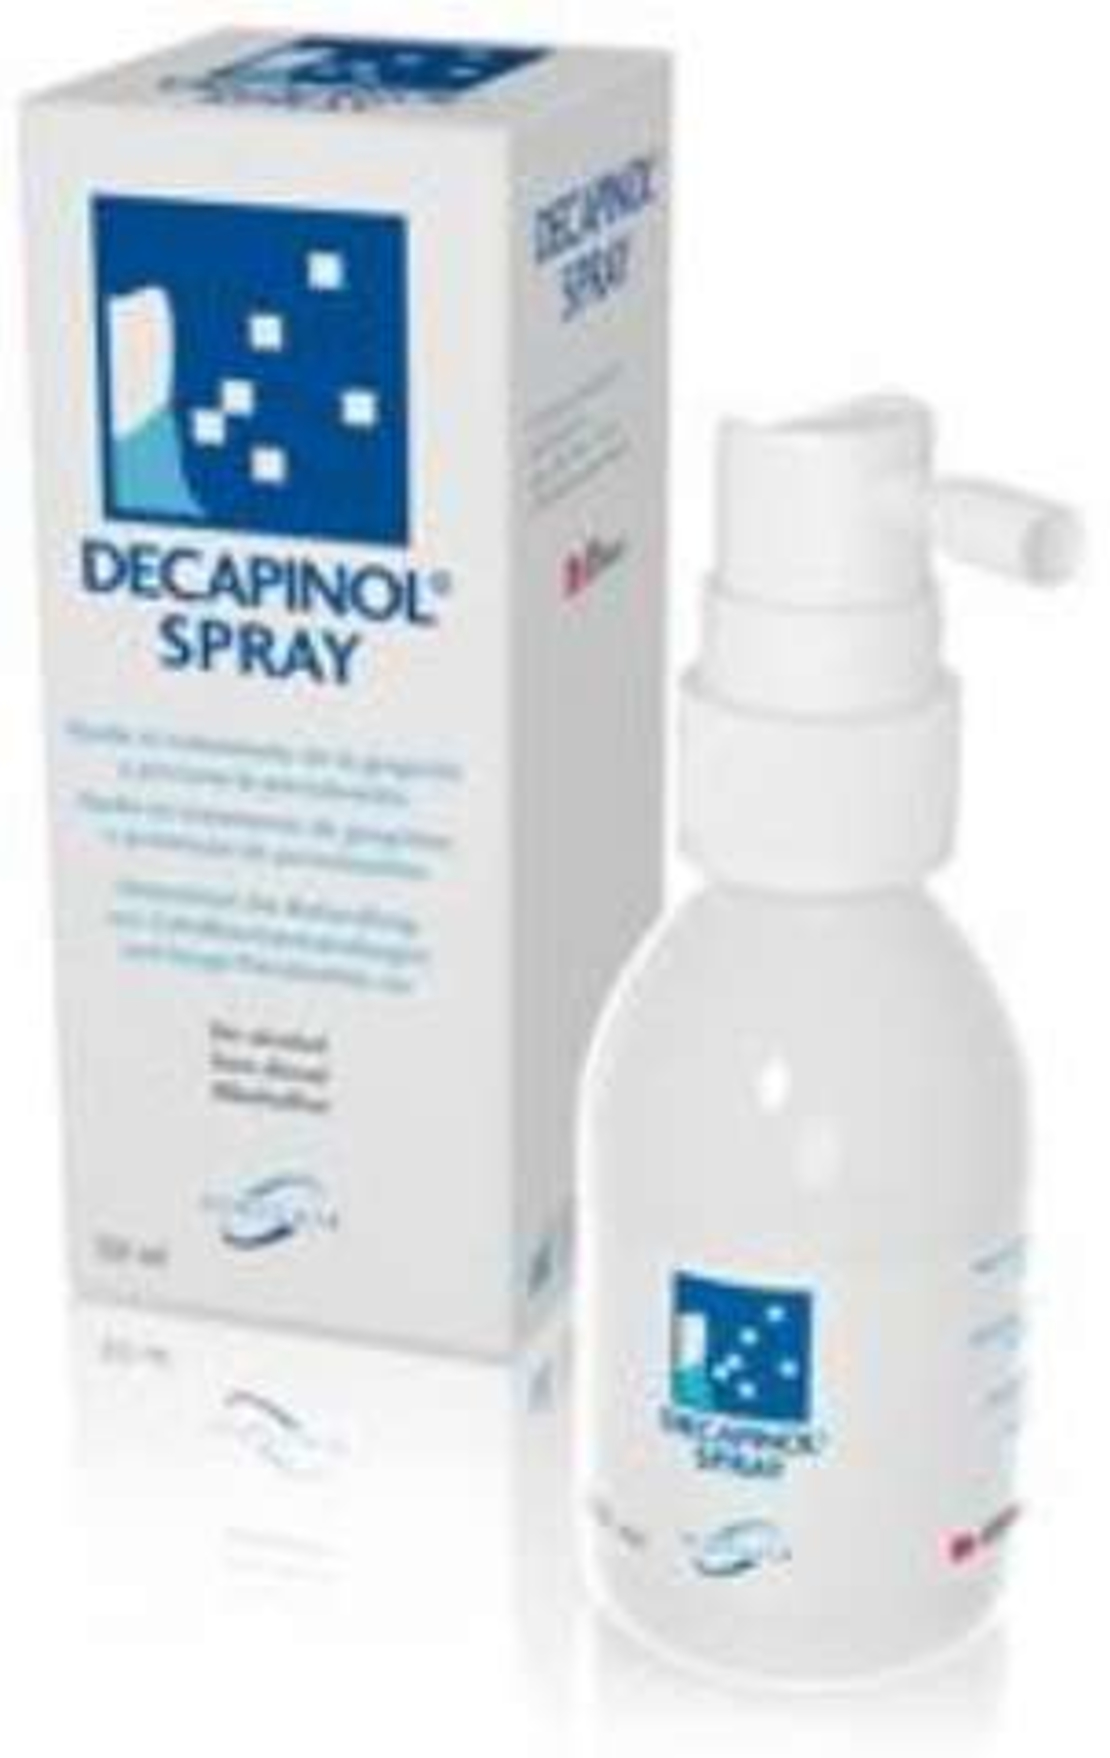 דקפינול ספריי - ספריי לשיניים וחניכיים Decapinol Spray